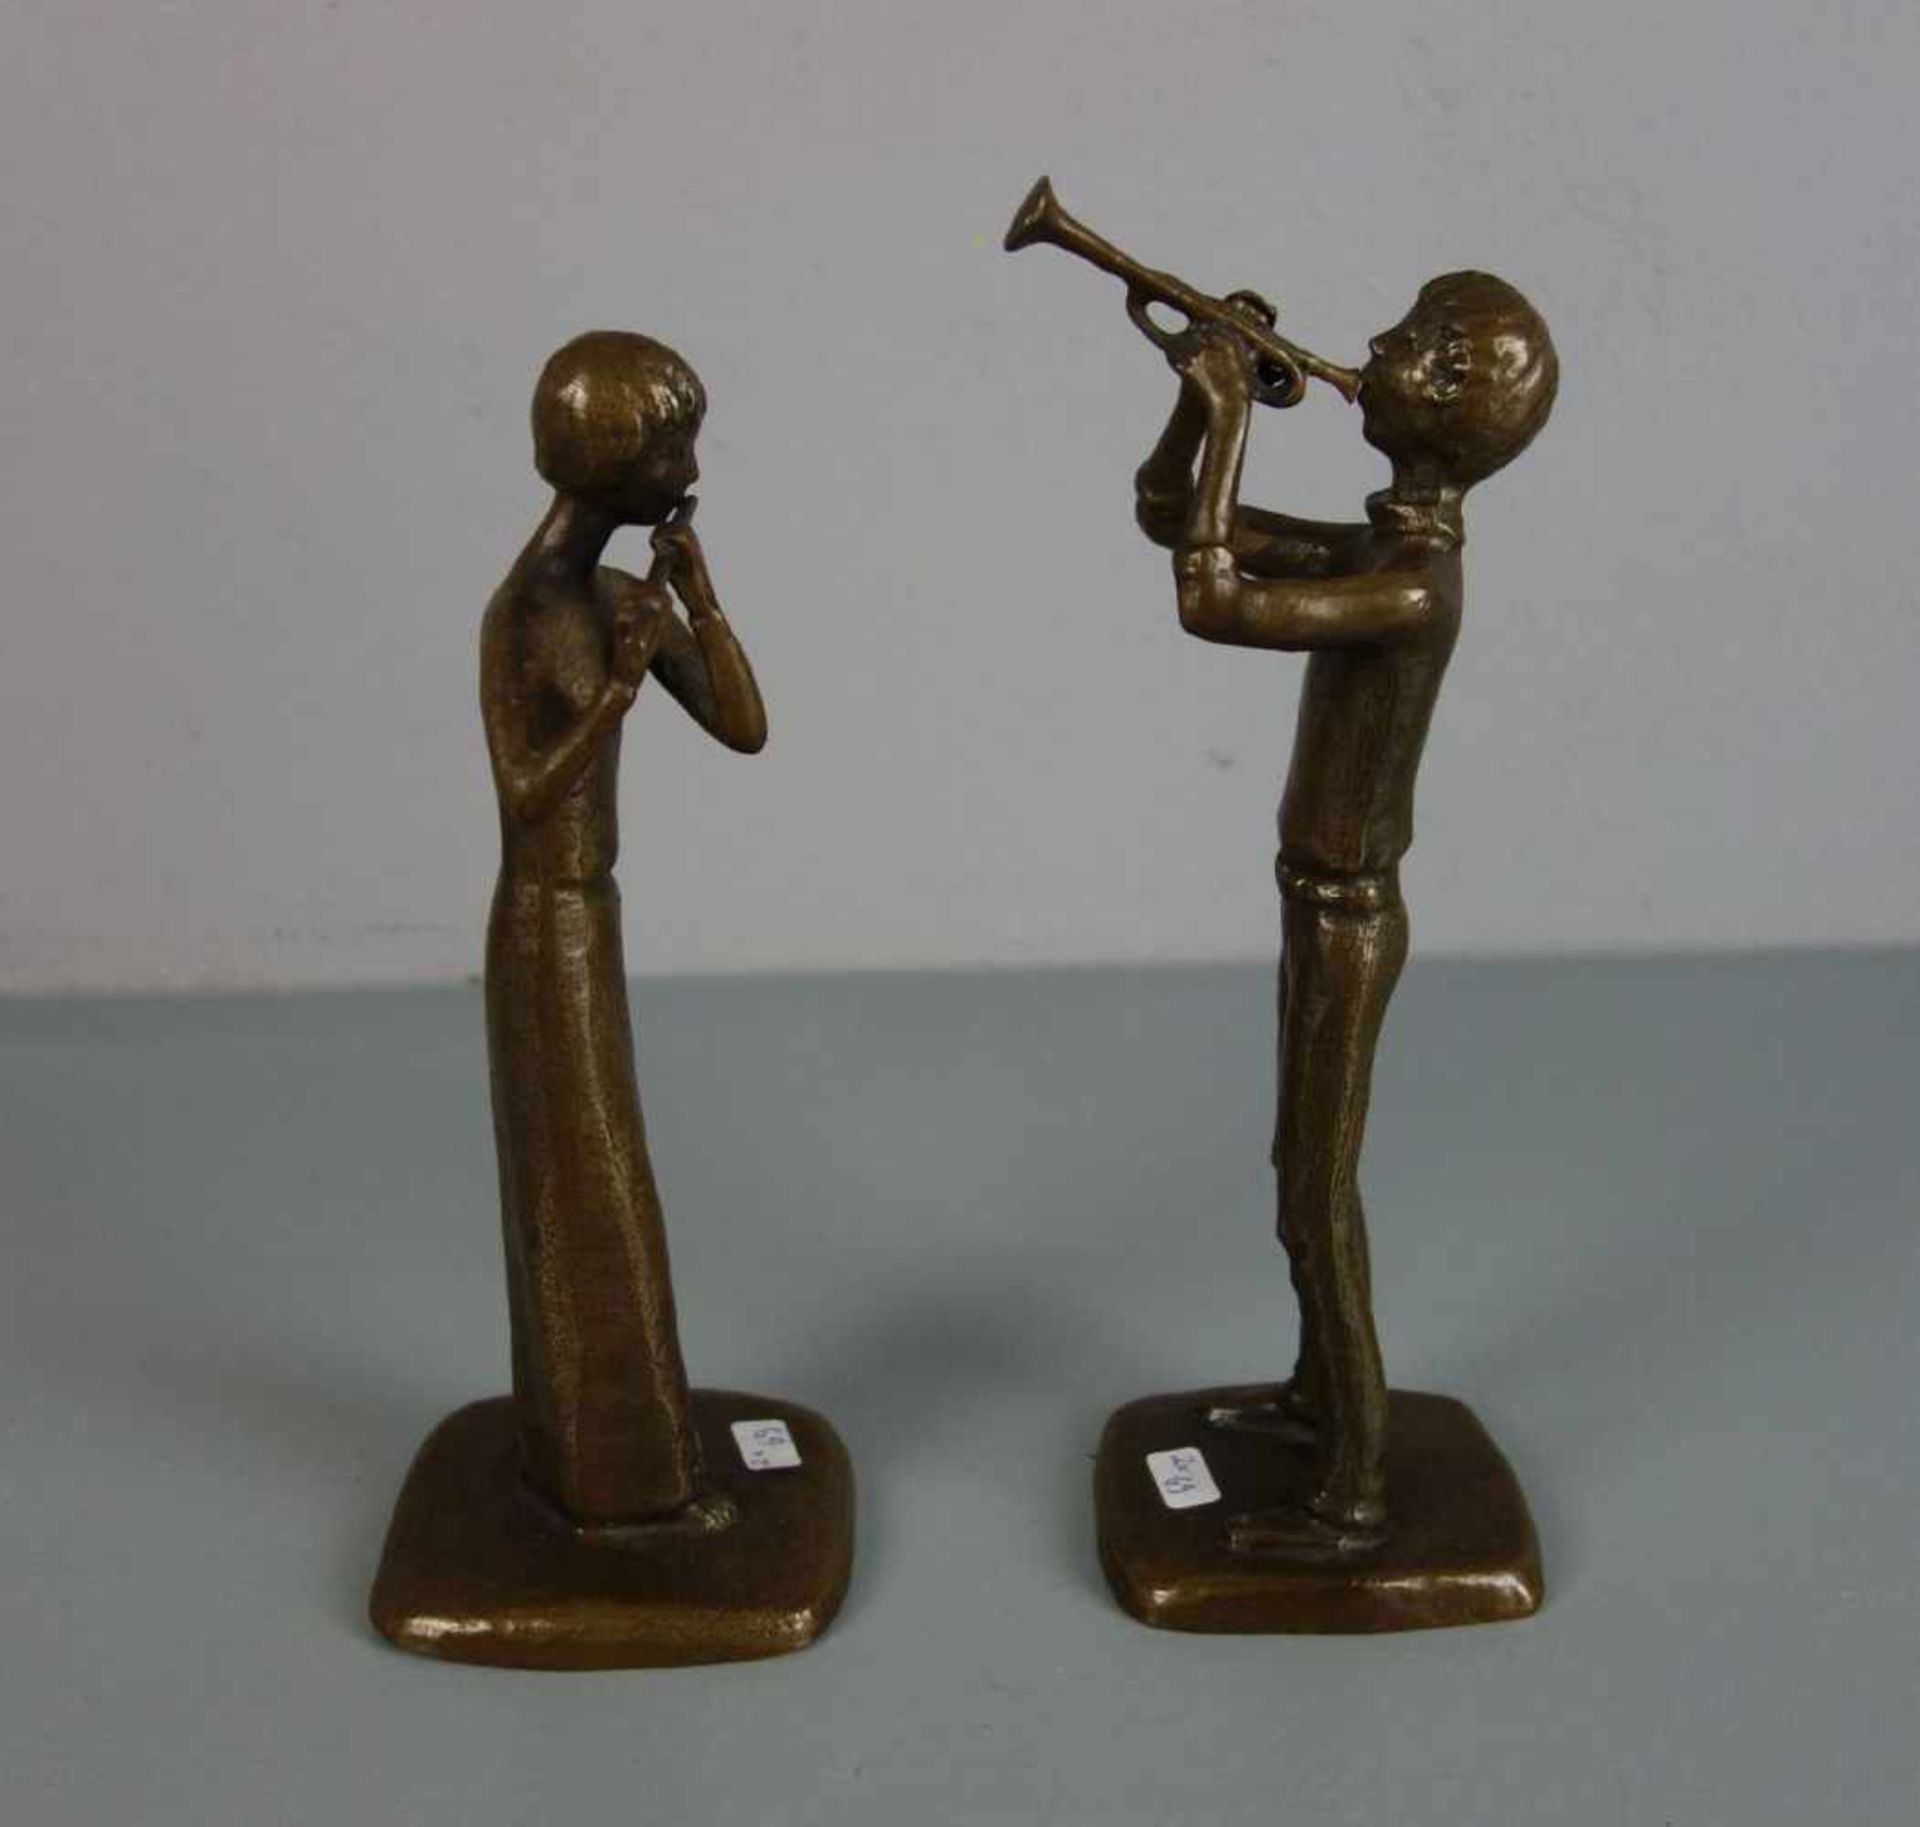 ANONYMER BILDHAUER (20. / 21. JH.), Paar Bronze - Skulpturen: "Trompeter" und "Flötistin" / - Image 2 of 4